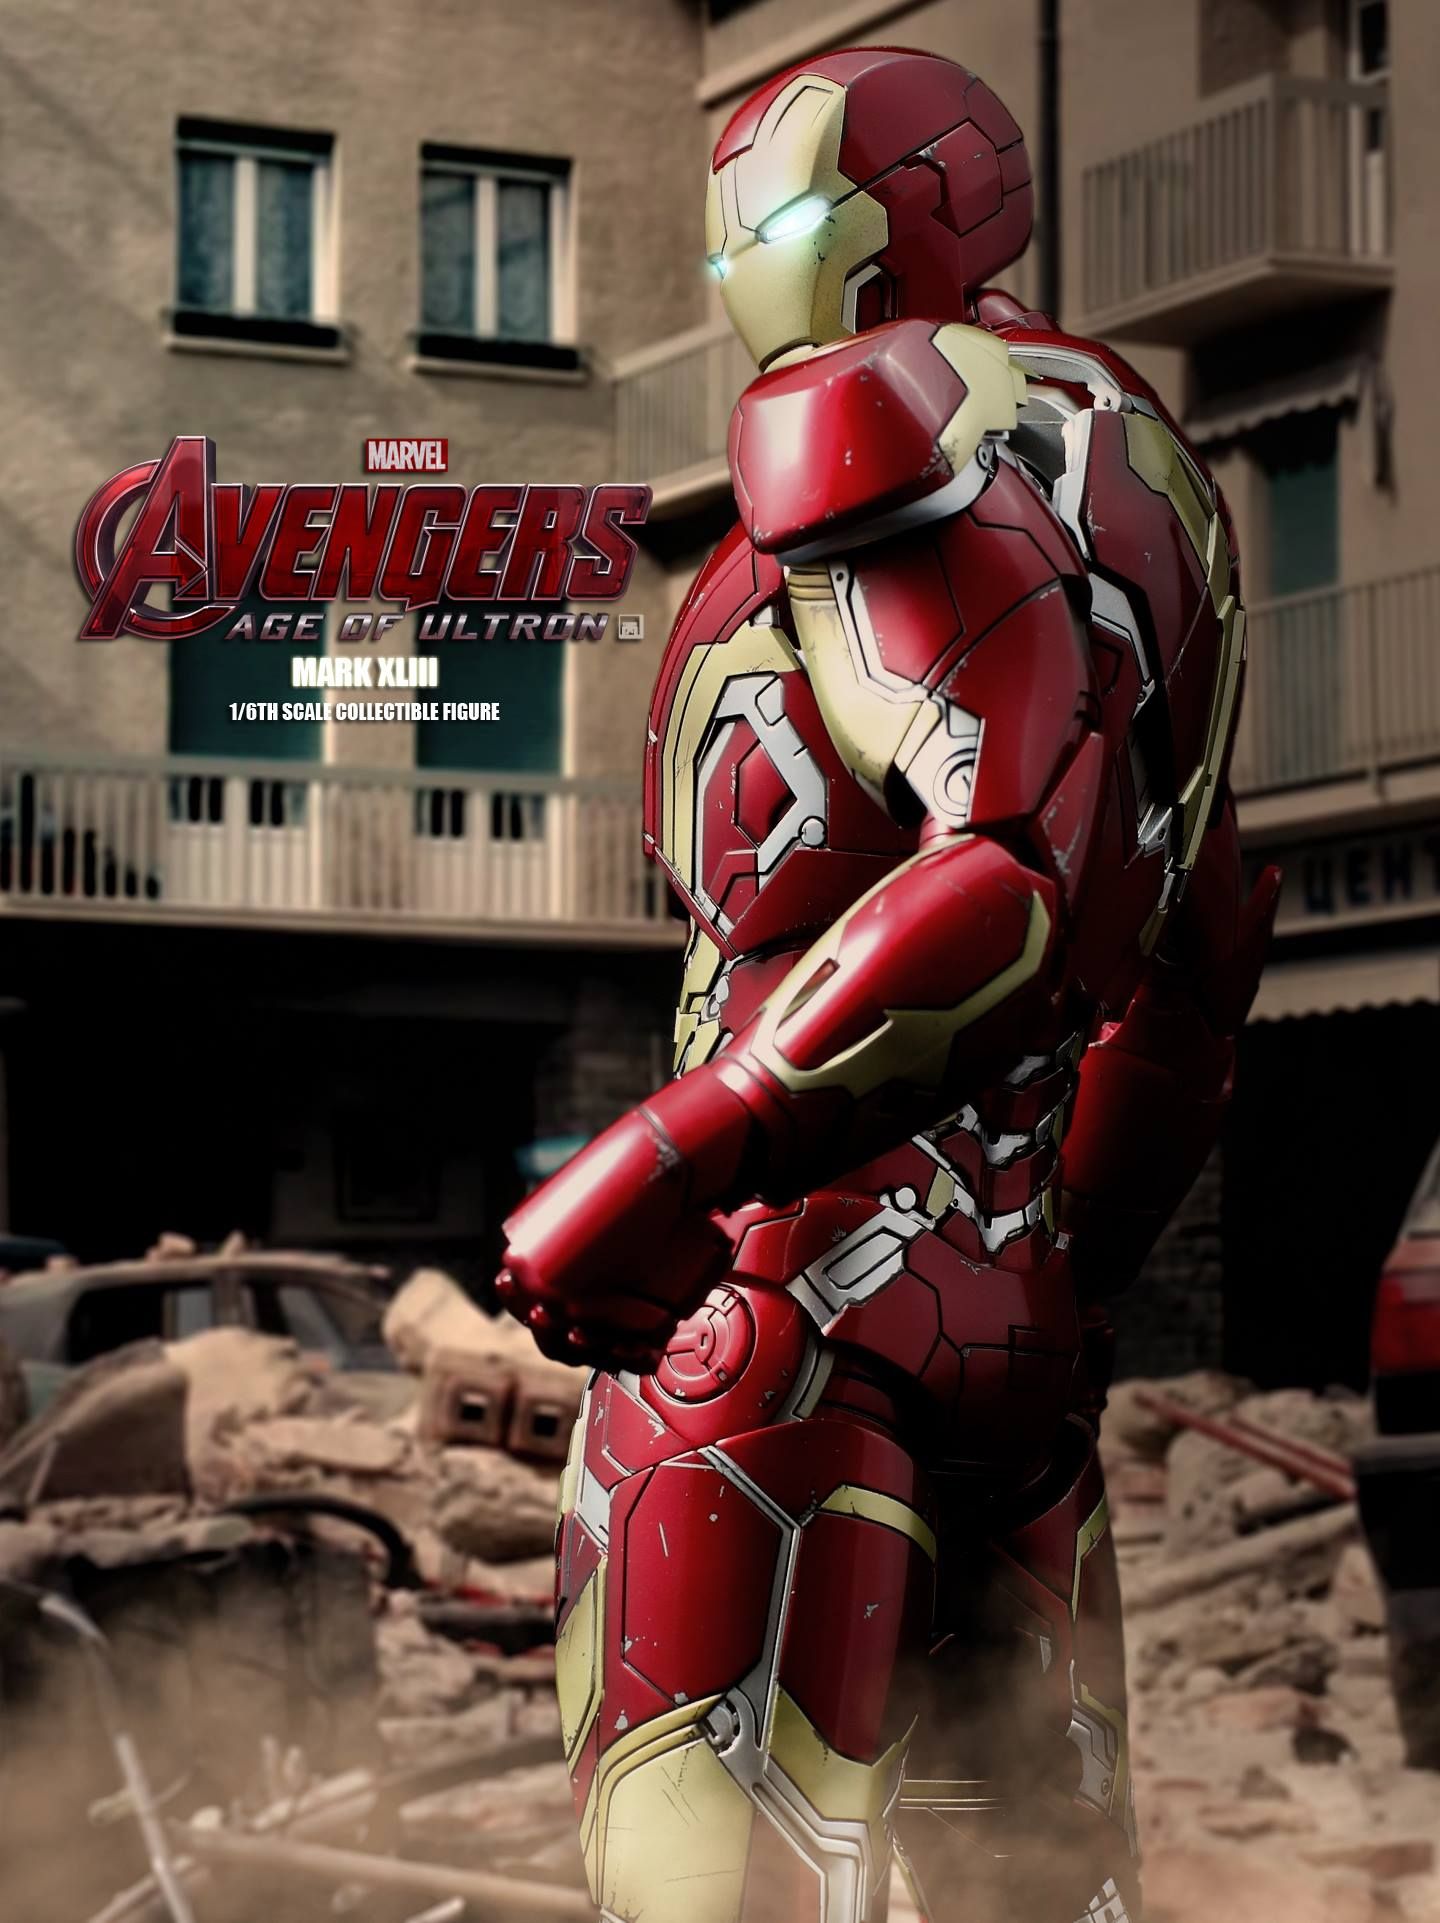 Avengers 2 Iron Man Mark XLIII Action Figure Photo 5